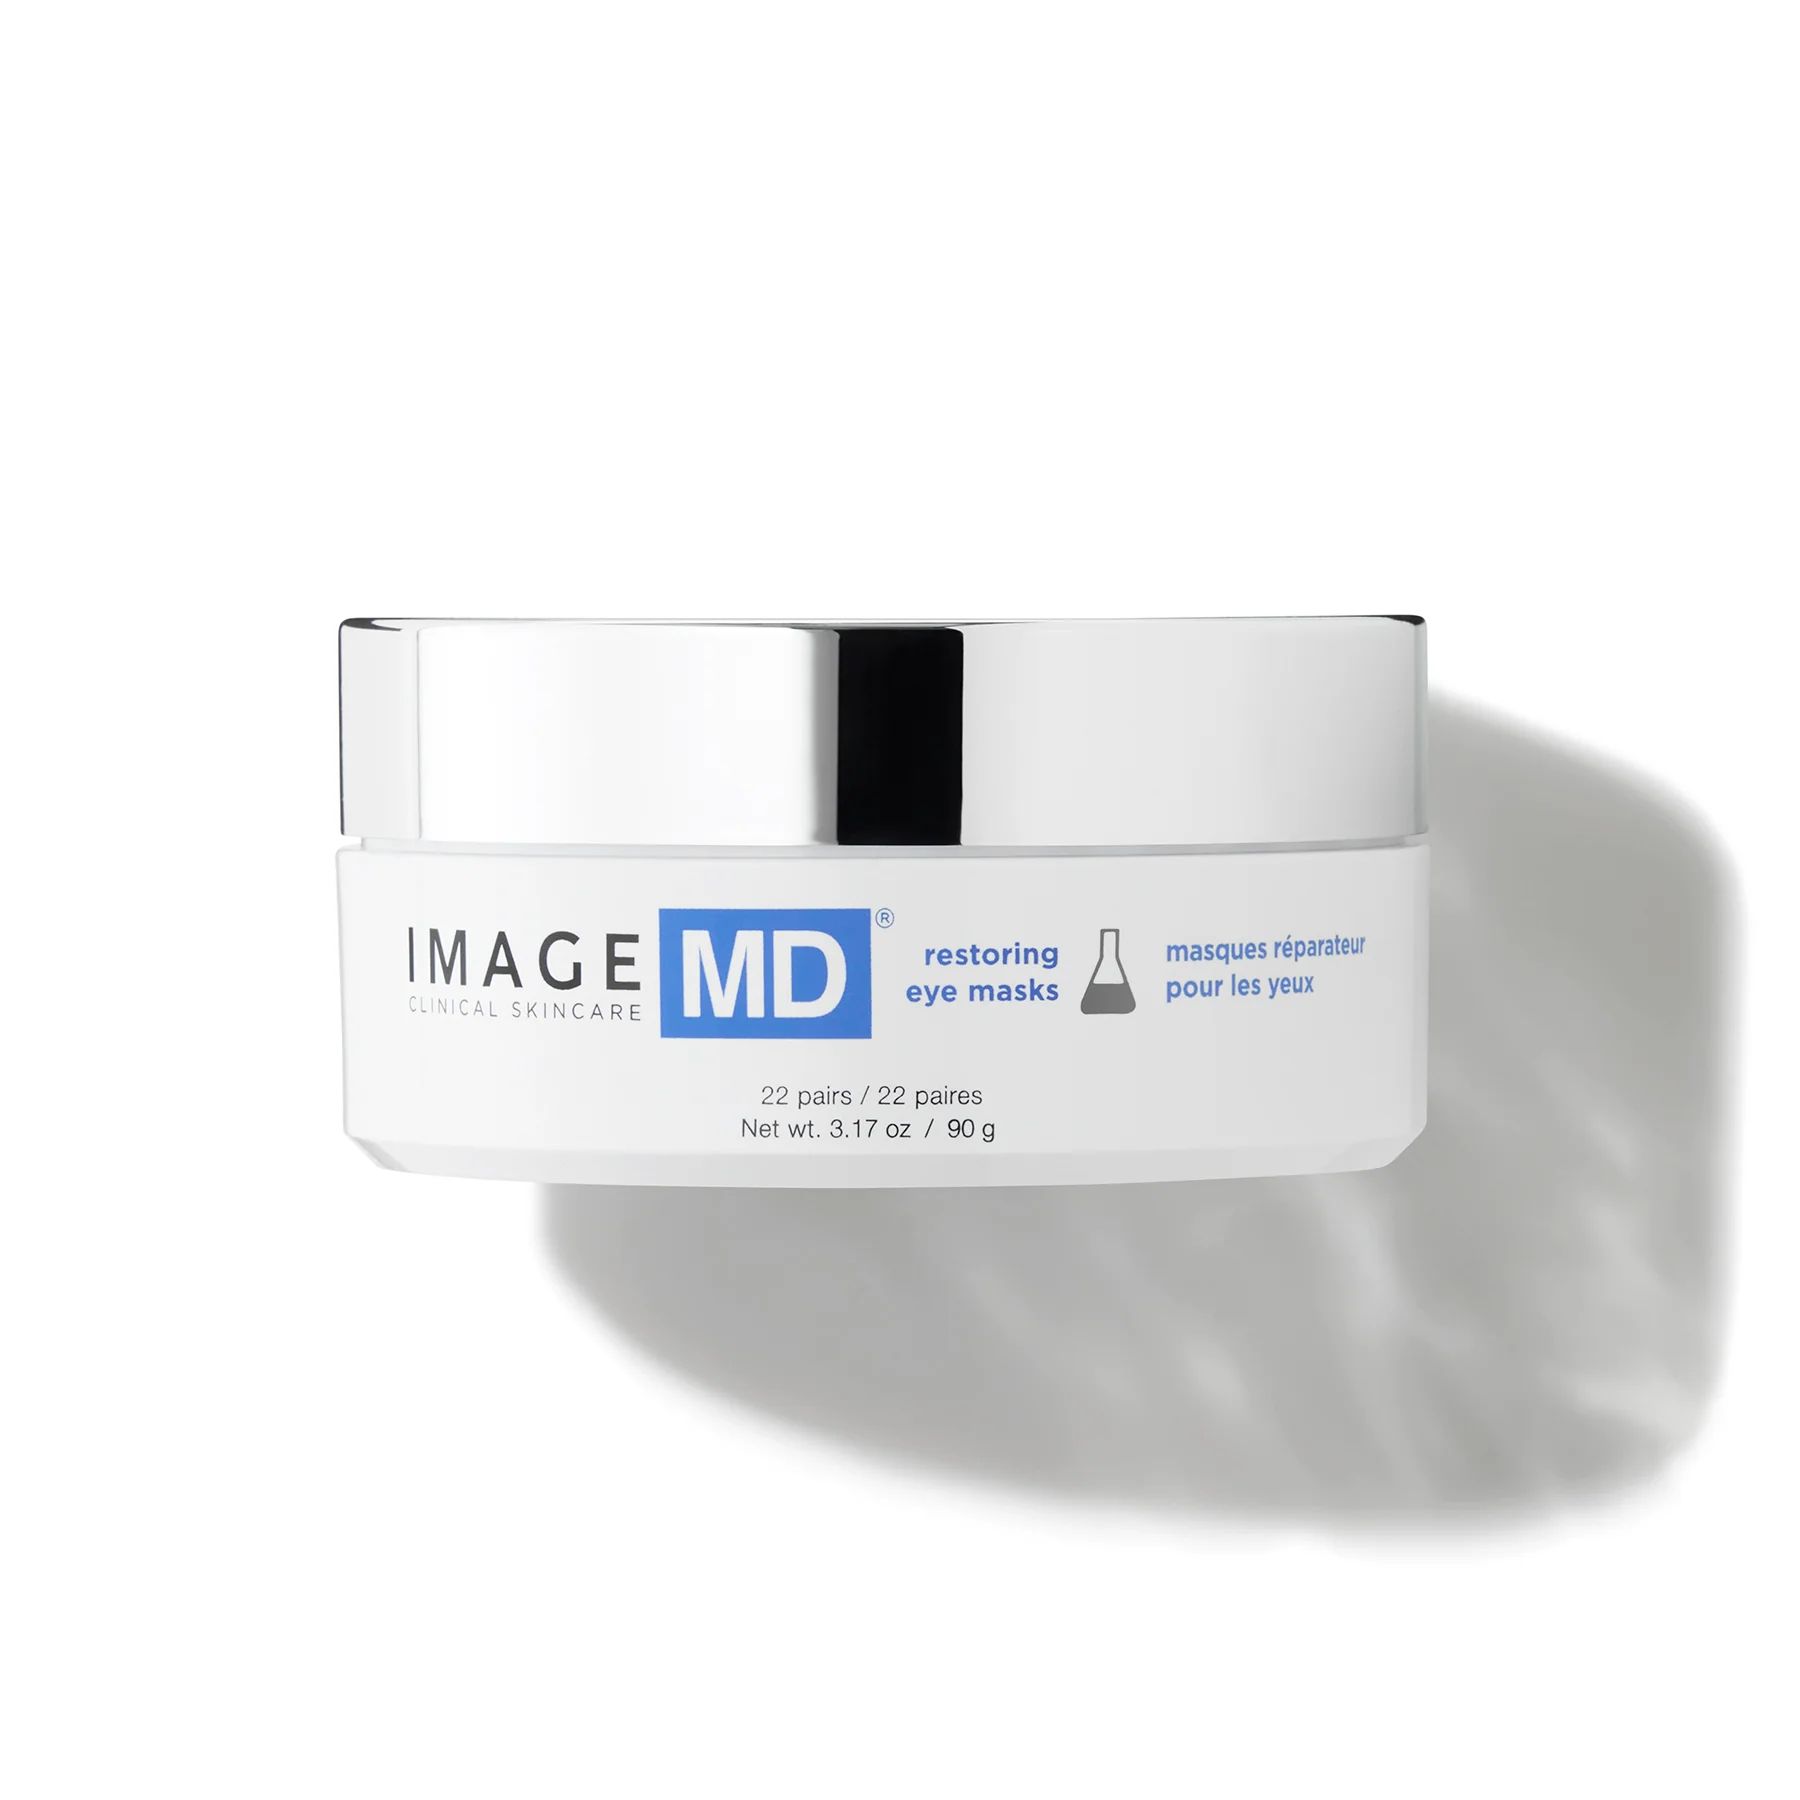 IMAGE MD® restoring eye masks | Image Skincare